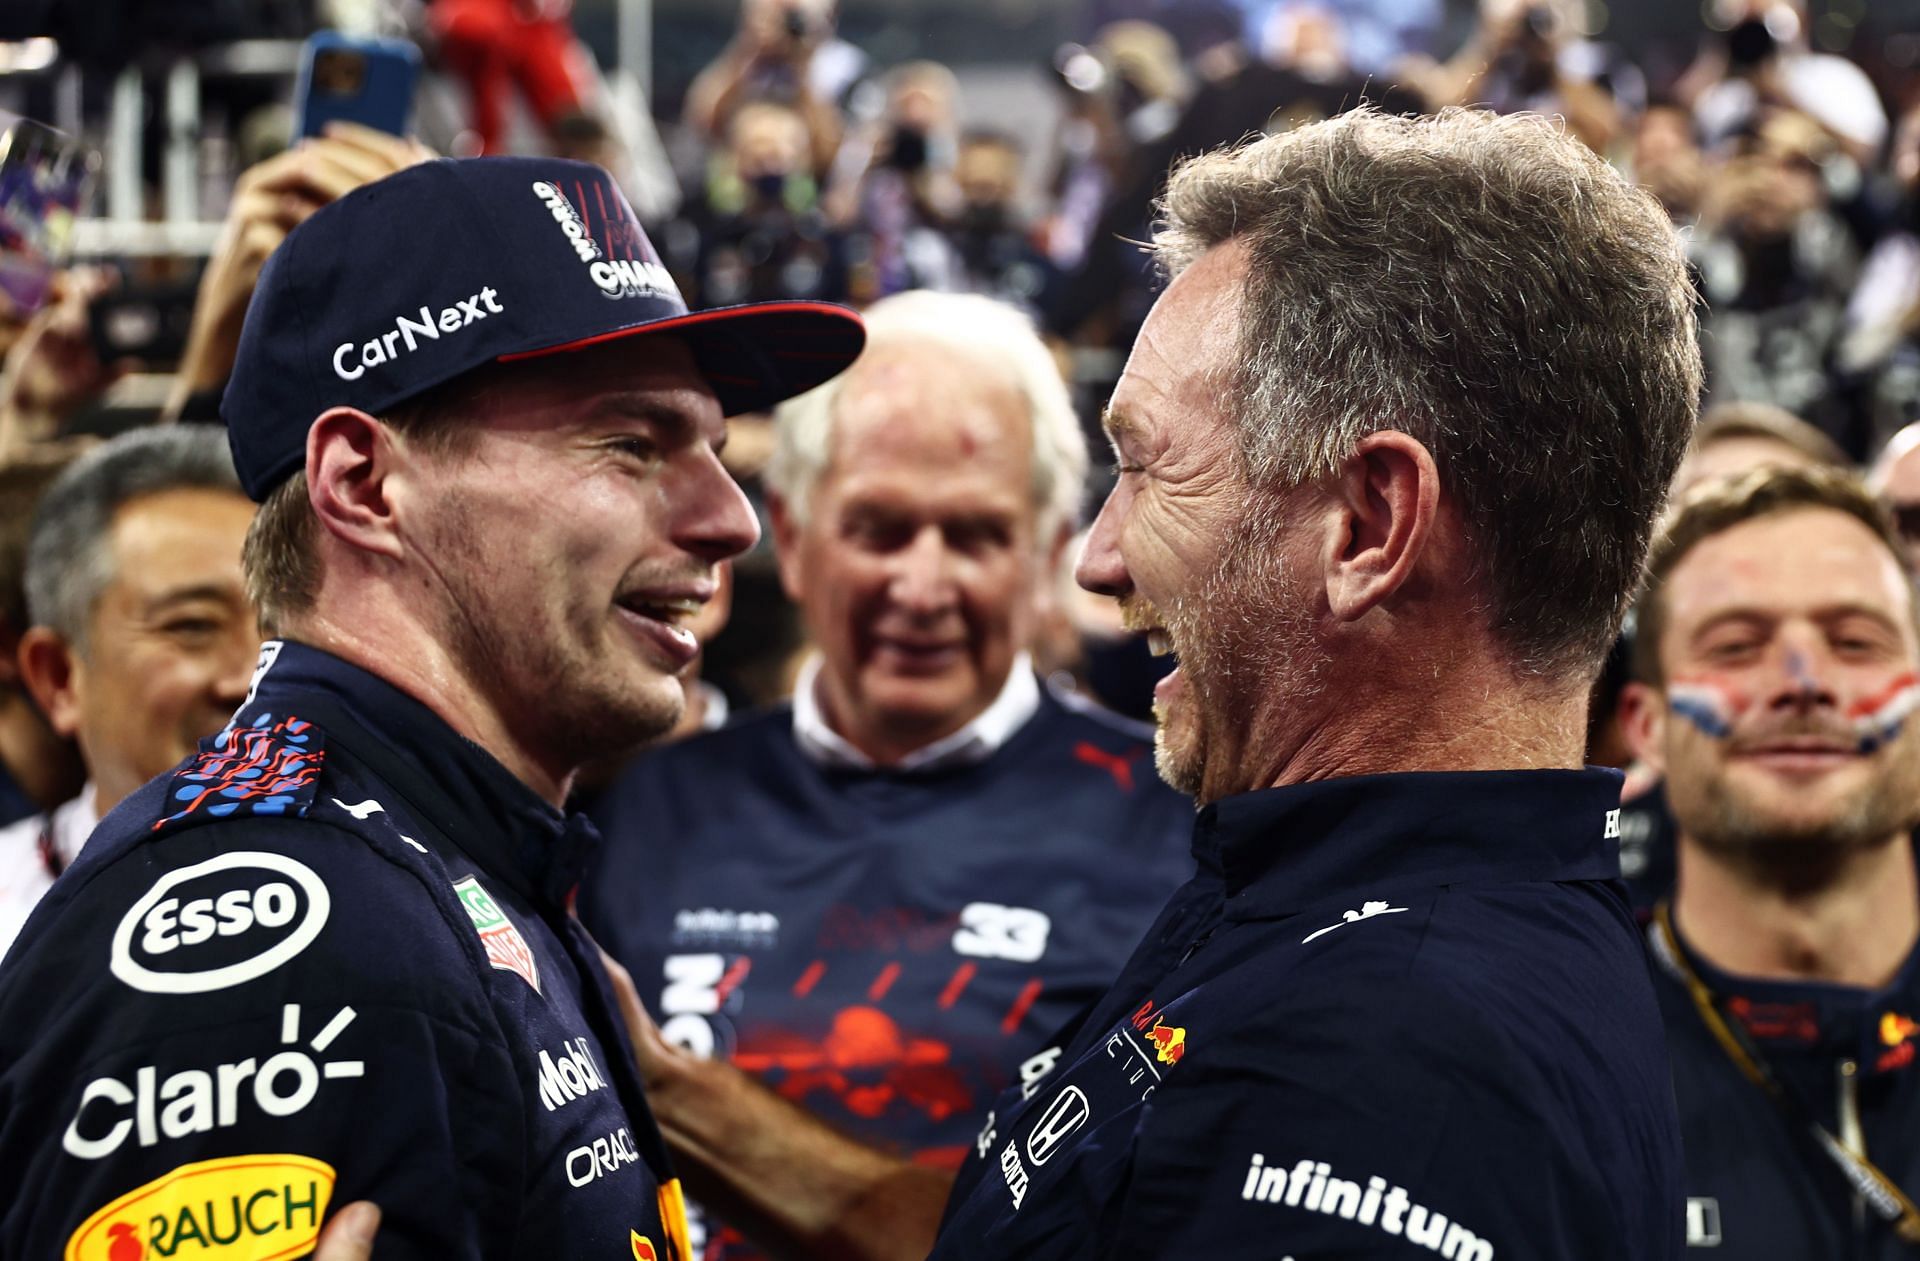 F1 Grand Prix of Abu Dhabi - Max Verstappen (left) and Christian Horner (right)